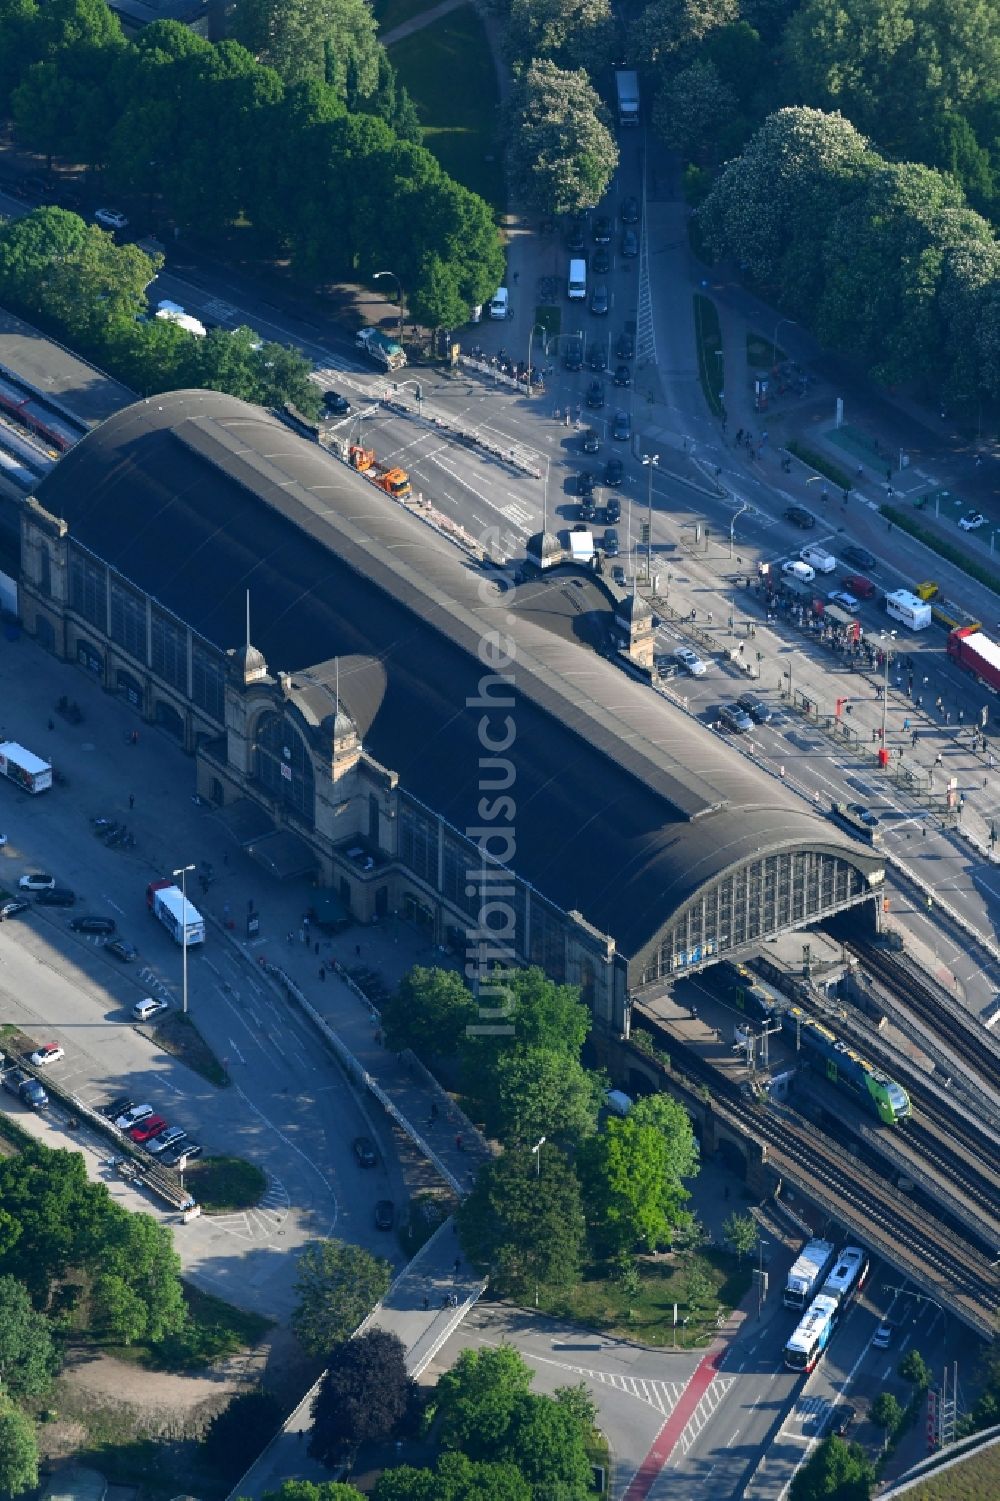 Hamburg von oben - Bahnhofsgebäude und Gleisanlagen des Bahnhofes Bahnhof Hamburg Dammtor in Hamburg, Deutschland